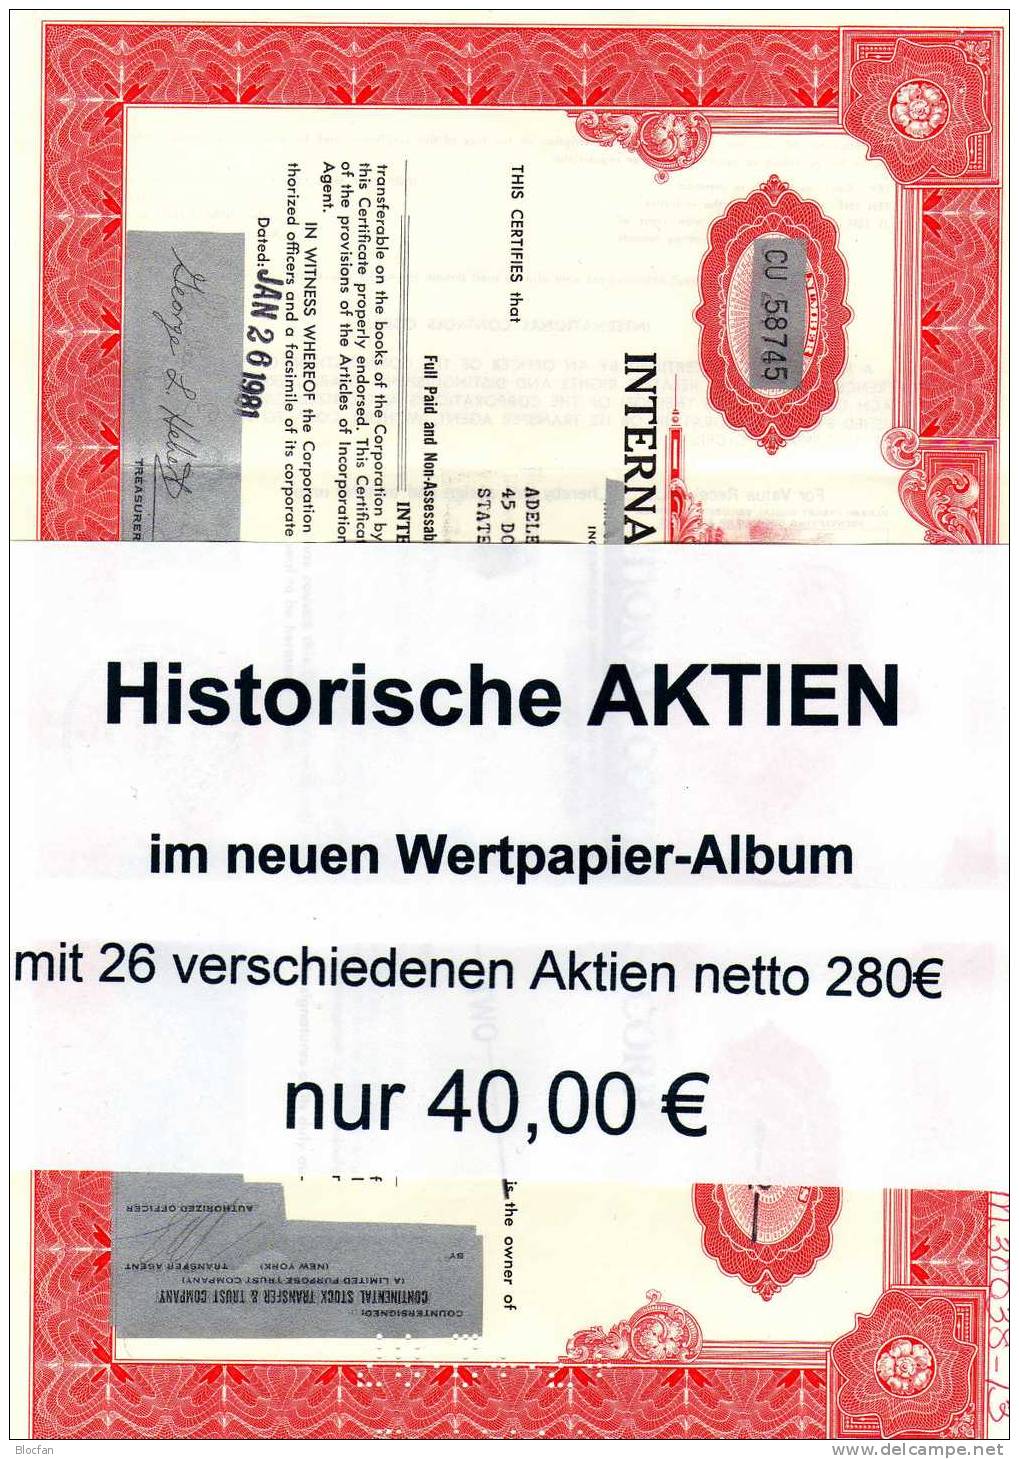 26 nur verschiedene historische Aktien im neuen Wertpapier-Album 280€ nach Suppes Wertpapierkatalog 2005 Sammlerwert